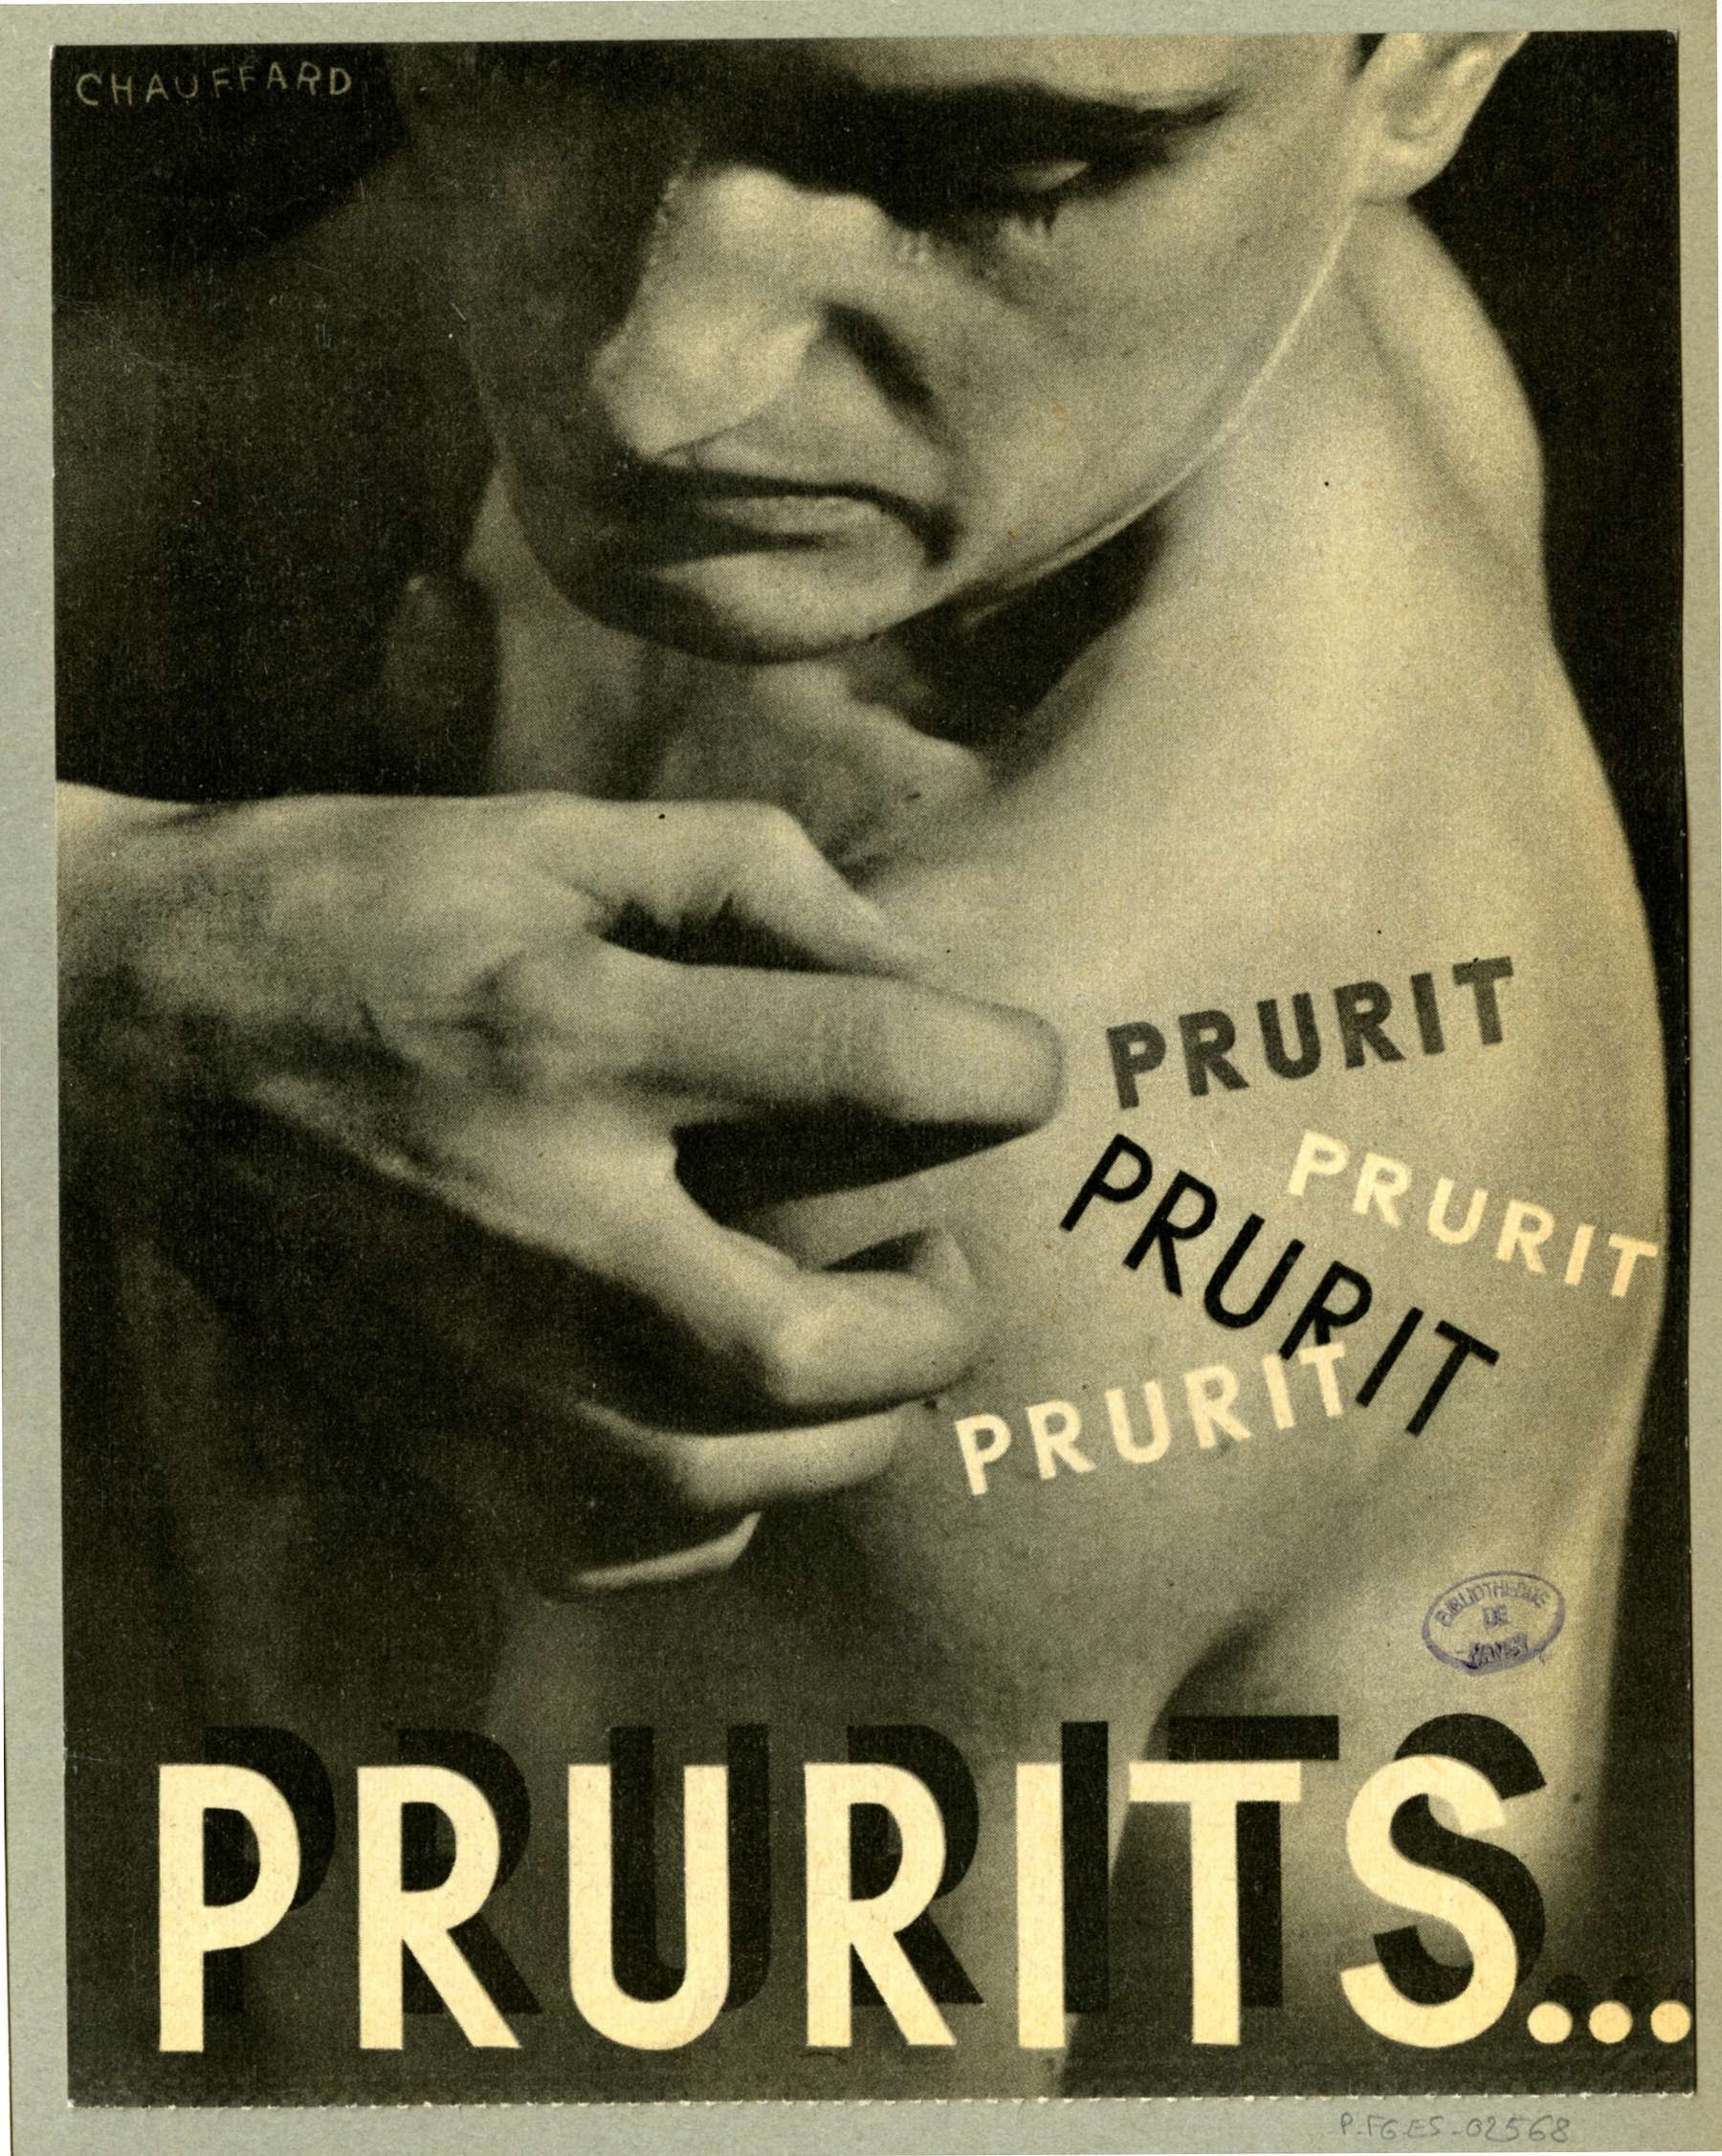 Contenu du Prurits ...